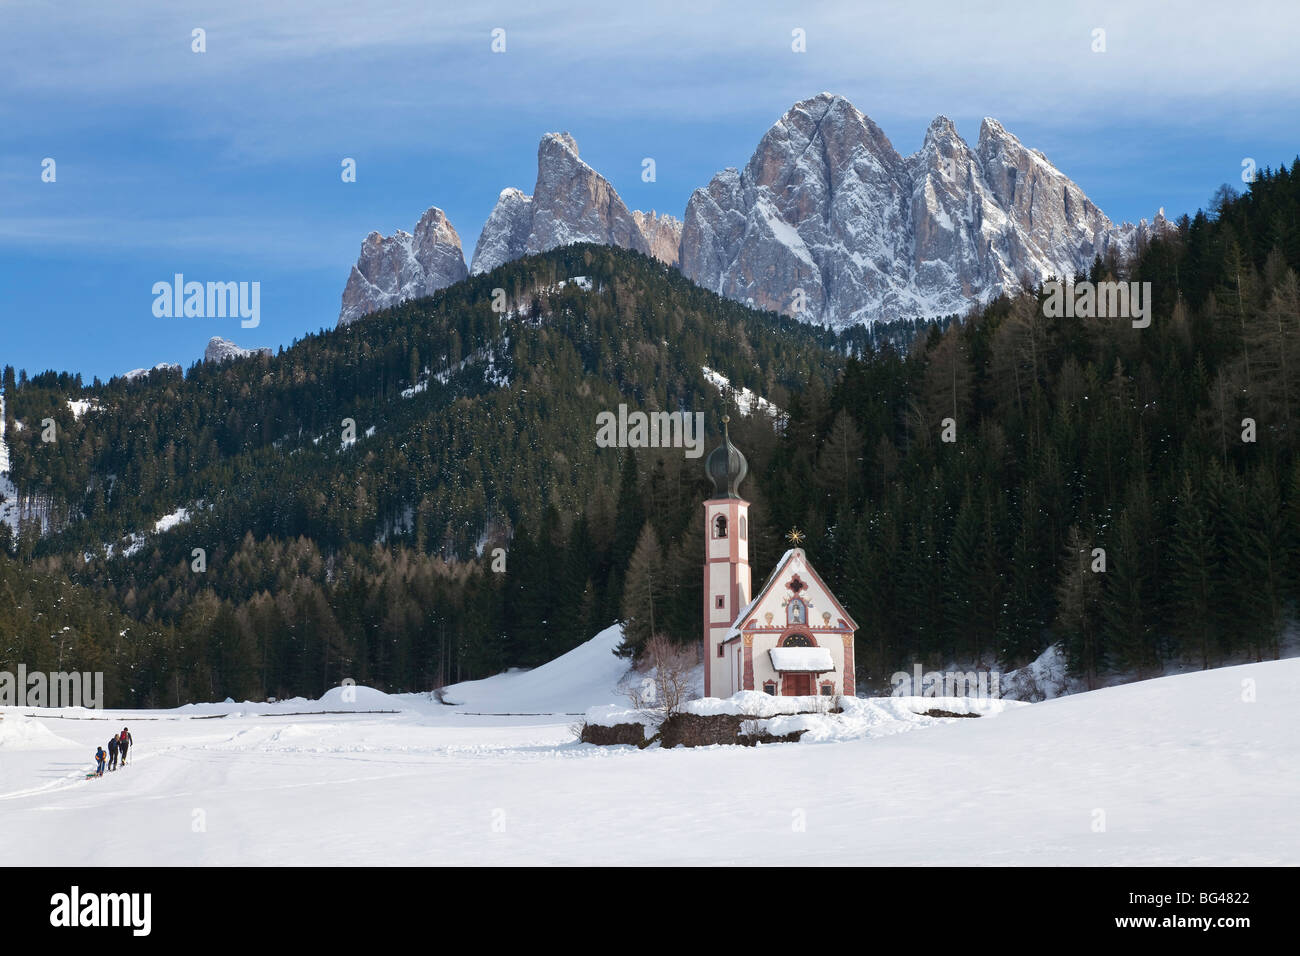 L'église St Johann à Saintes en Villnoss, Geisler Spitzen (3060m), Val di Funes, montagnes des Dolomites, Trentino-Alto Adige, Italie Banque D'Images